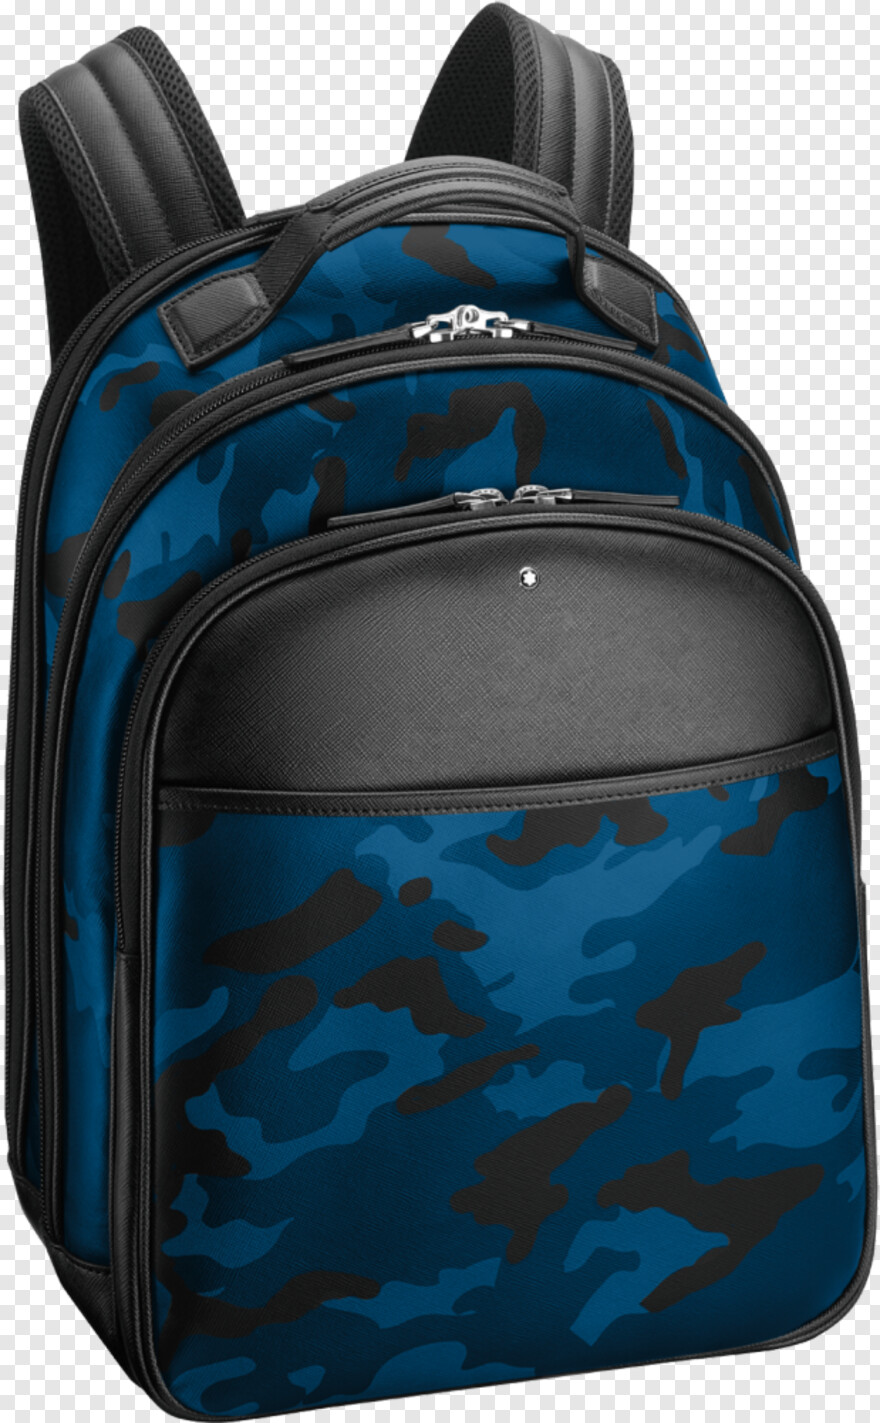 backpack # 426697